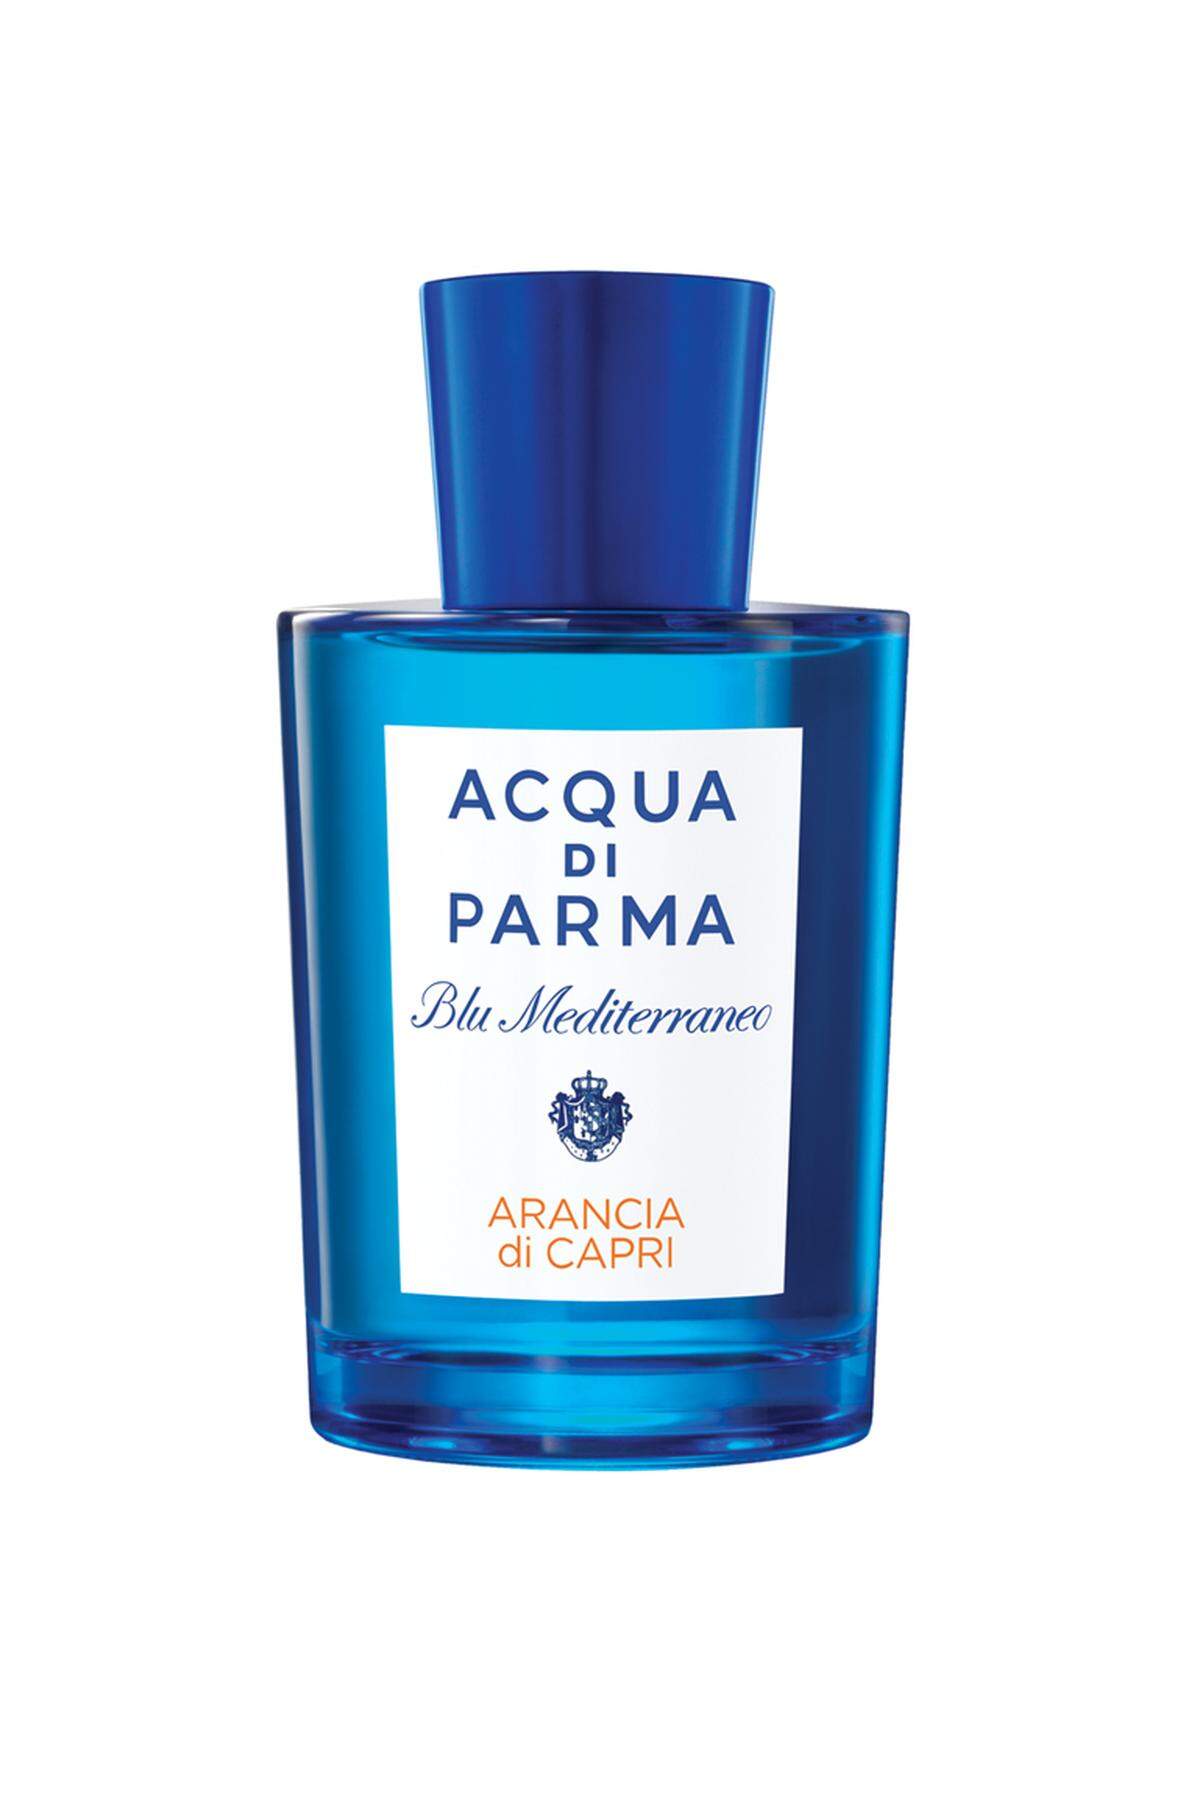 Acqua di Parma ließ sich bei den Düften Blu Mediterraneo vom italienischen Mittelmeer inspirieren. Orange, Mandarine und Zitrone vereinen sich mit Essenzen von Petitgrain und Kardamon zu einem Duft, der an Capri erinnern soll.